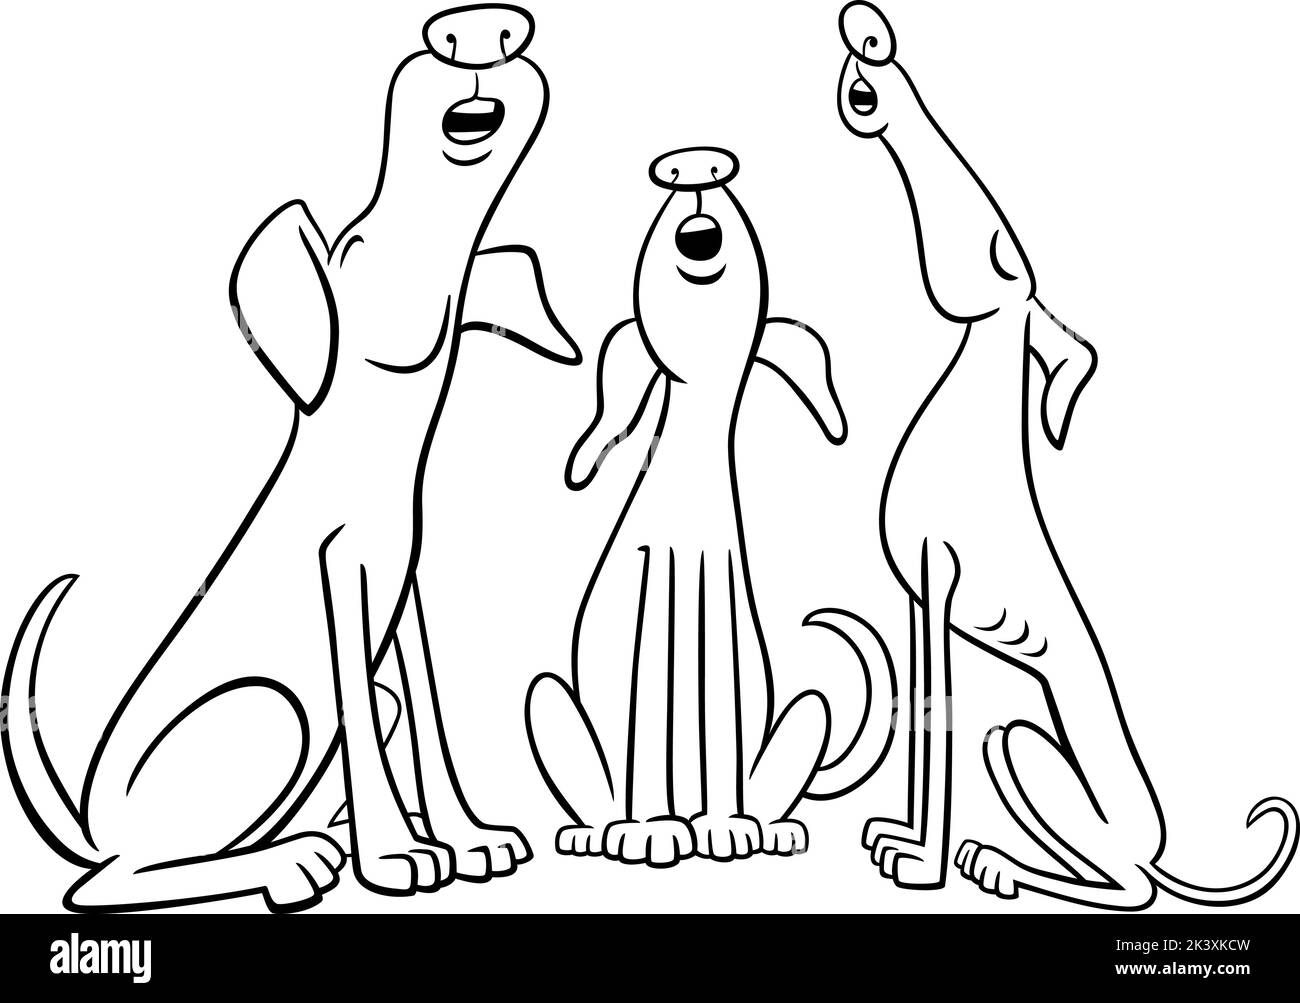 Dessin animé noir et blanc illustration de trois chiens personnages animaux hurlant ou aboyant page de coloriage Illustration de Vecteur